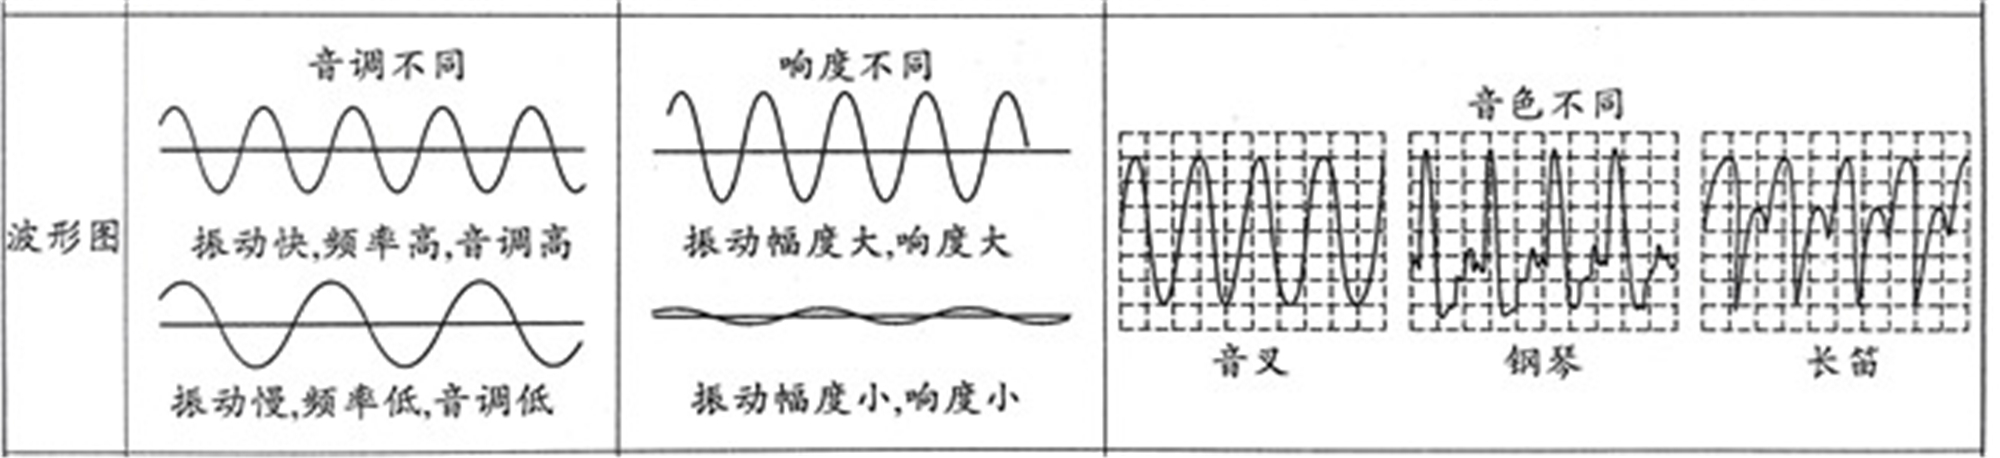 声音的特性波形图图片